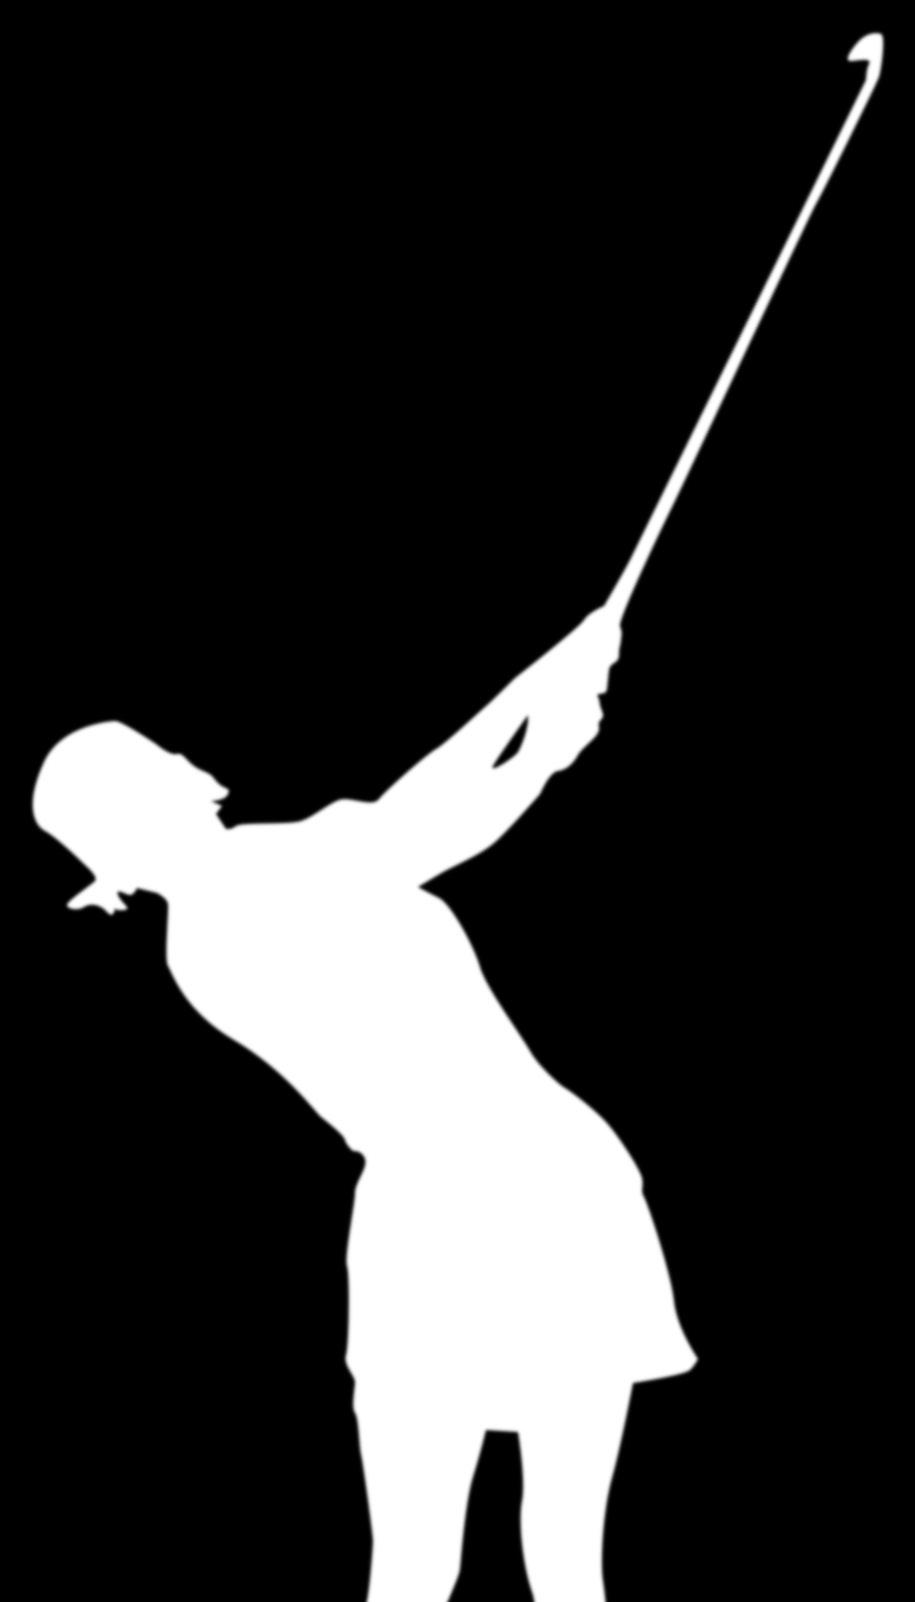 SYMERTA TOUR WINNER (2013) LPGA